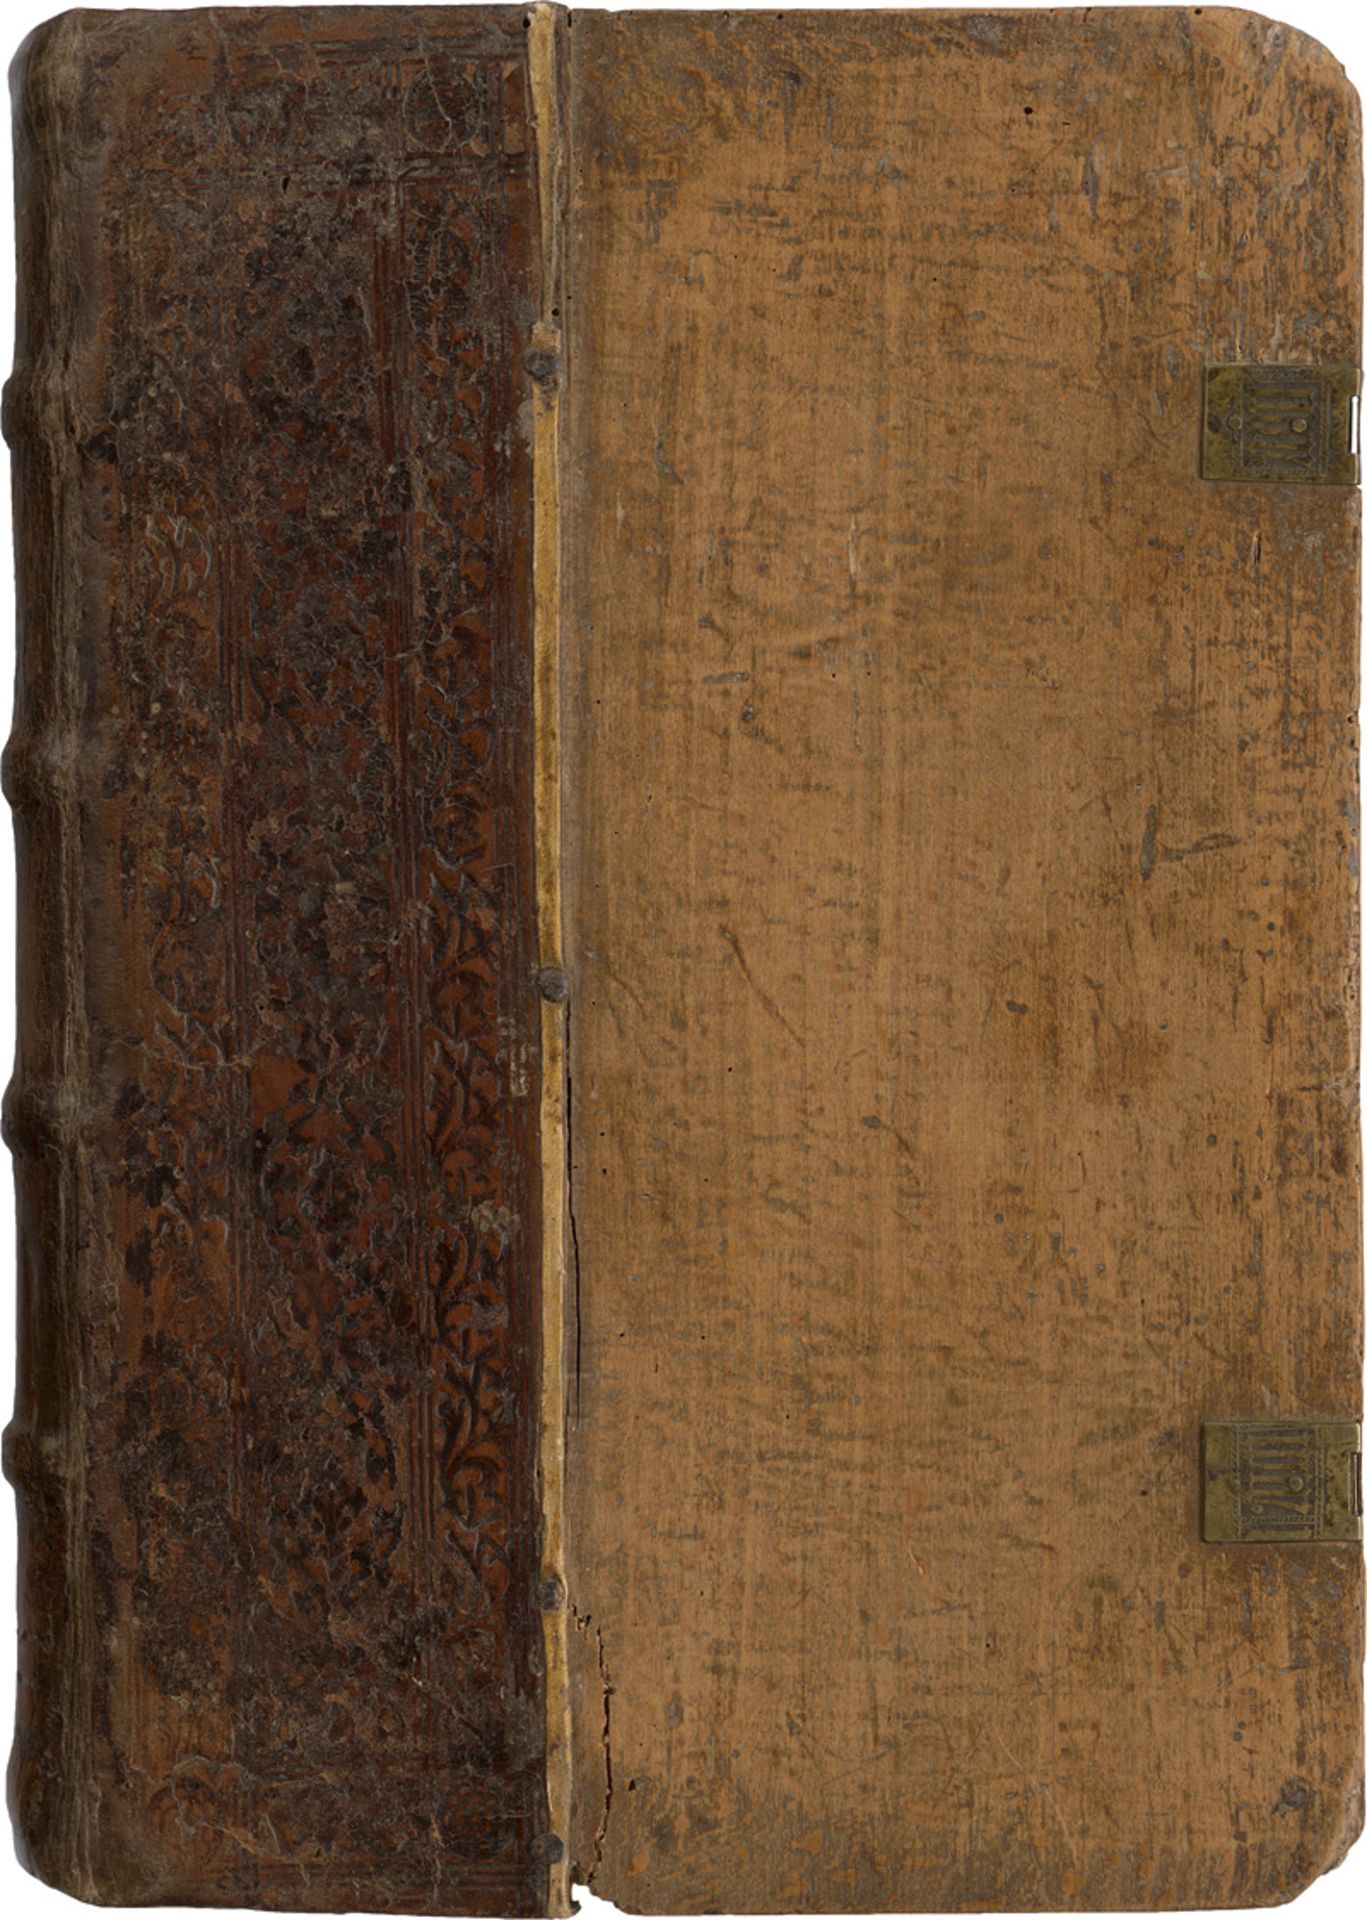 Augustinus, Aurelius: In sacras Pauli epistolas interpretatio. Paris 1499